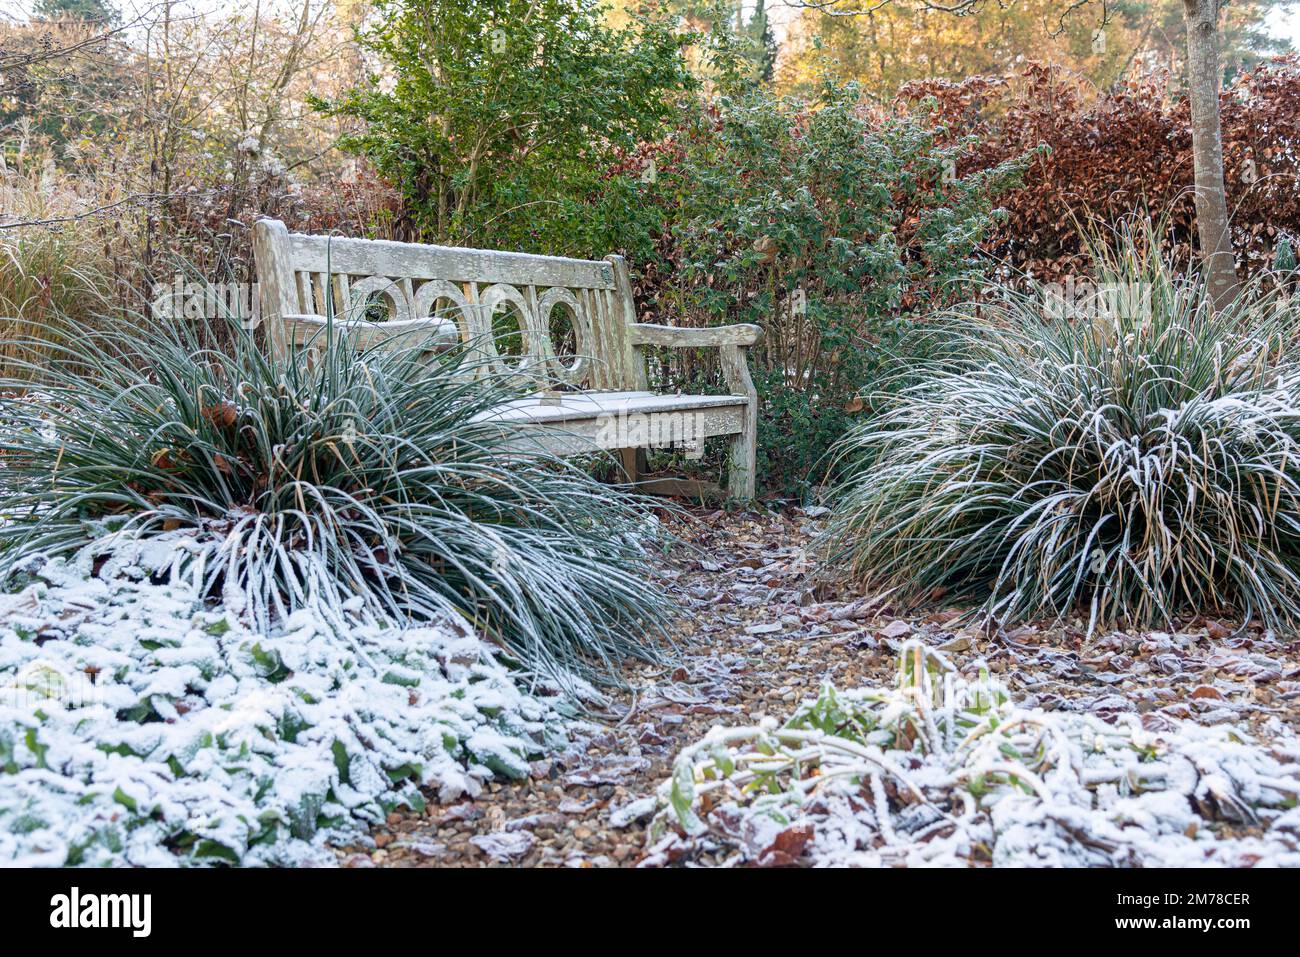 Jardin en hiver avec neige et gel sur les plantes et les herbes, y compris un banc de jardin en bois - Berkshire, Angleterre, Royaume-Uni Banque D'Images